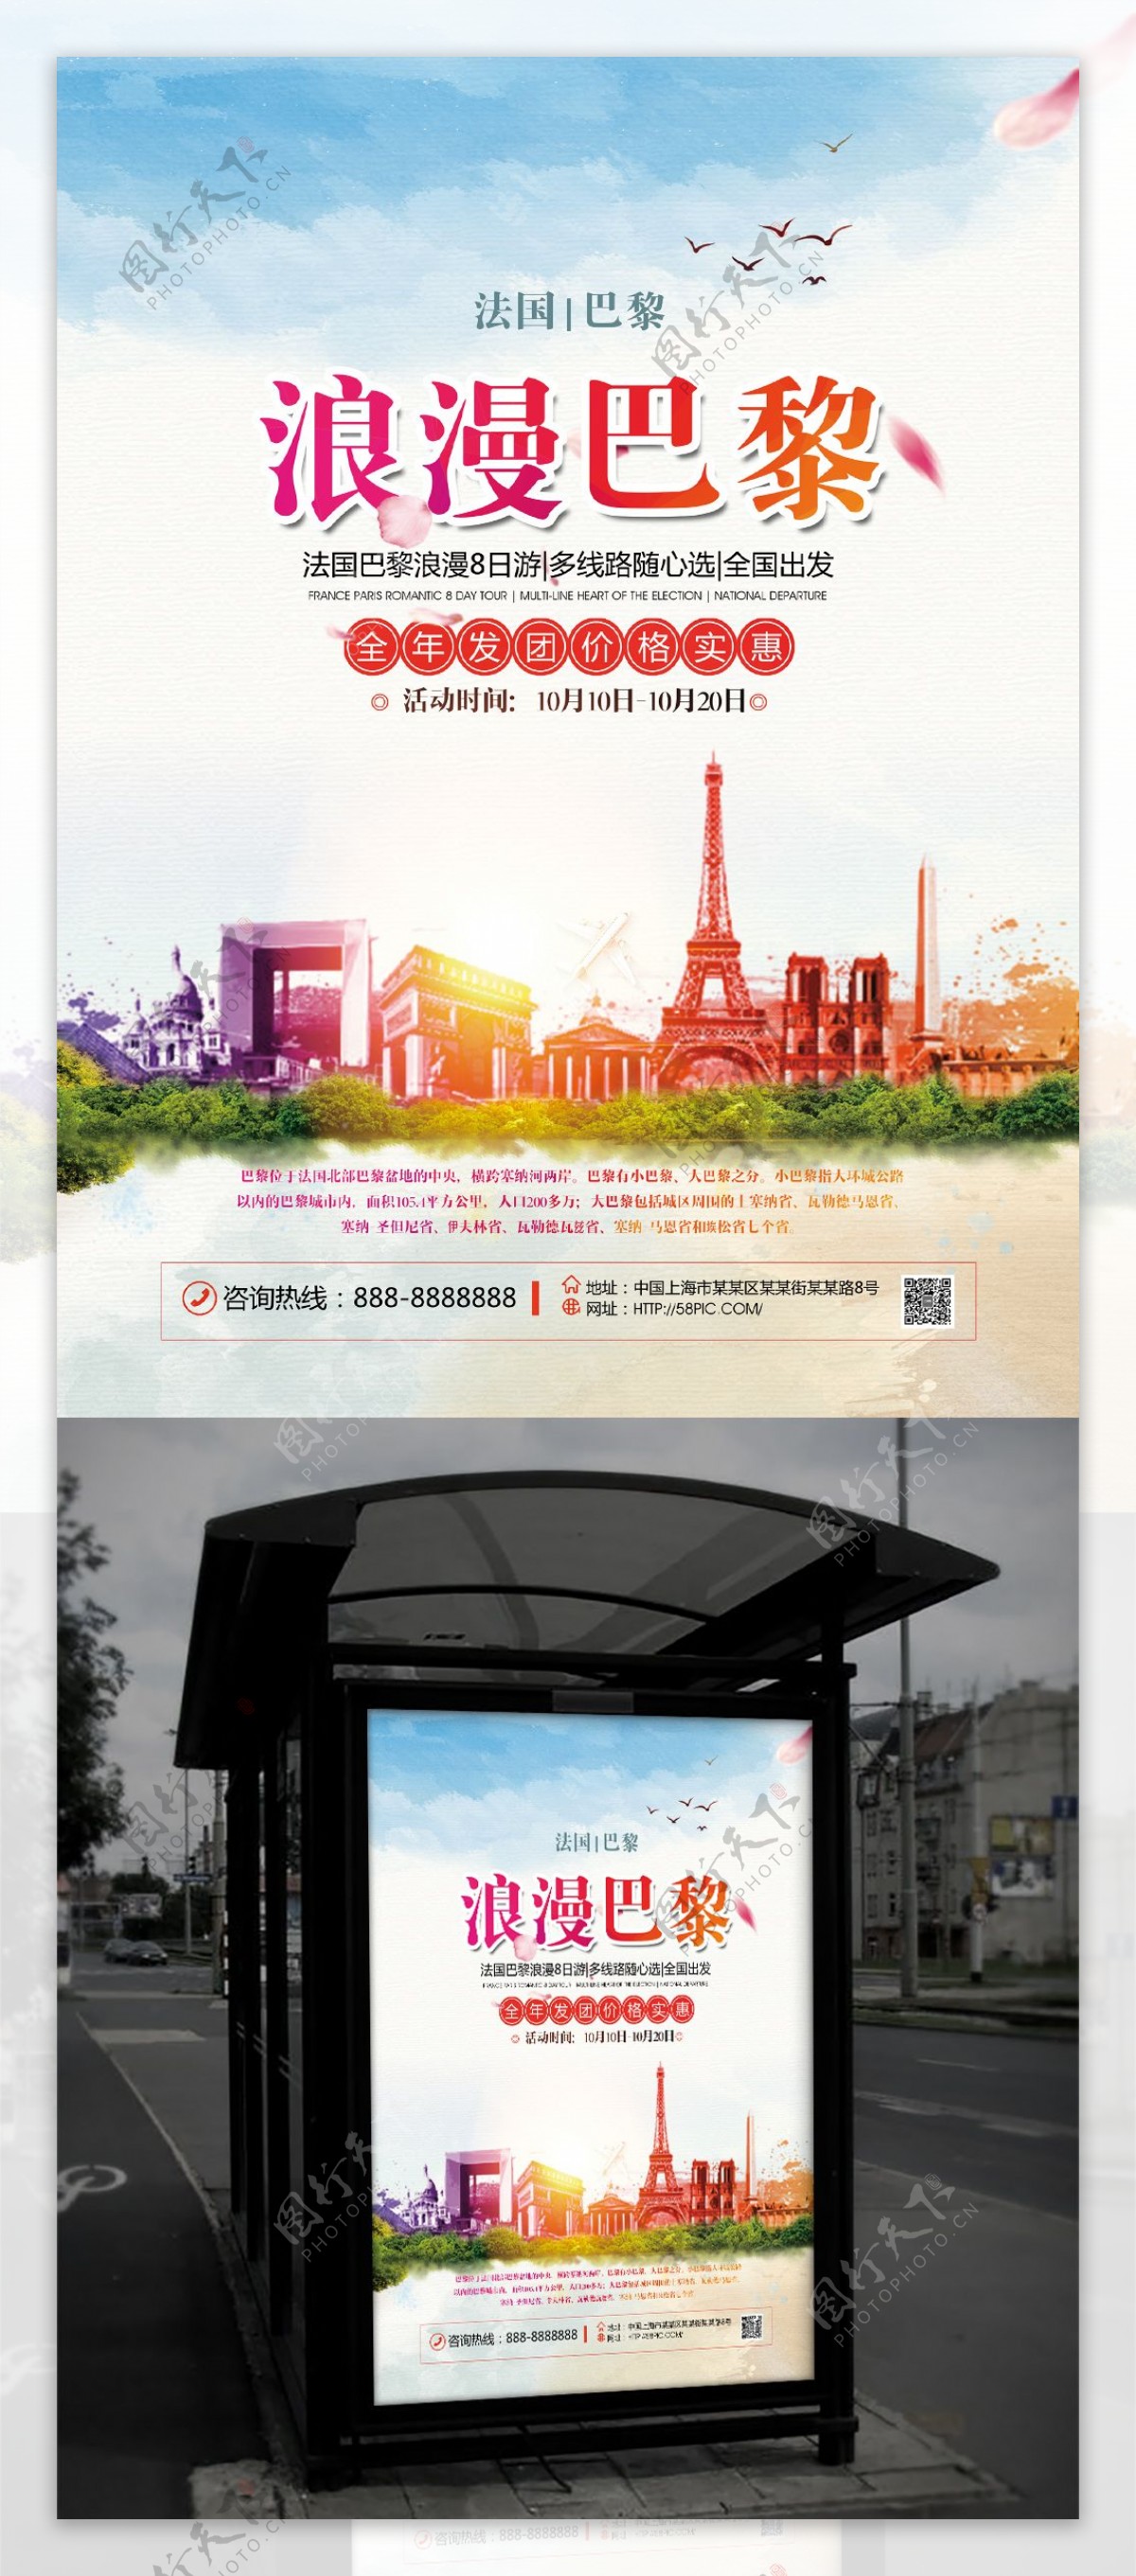 蓝色水彩风格巴黎旅游宣传海报